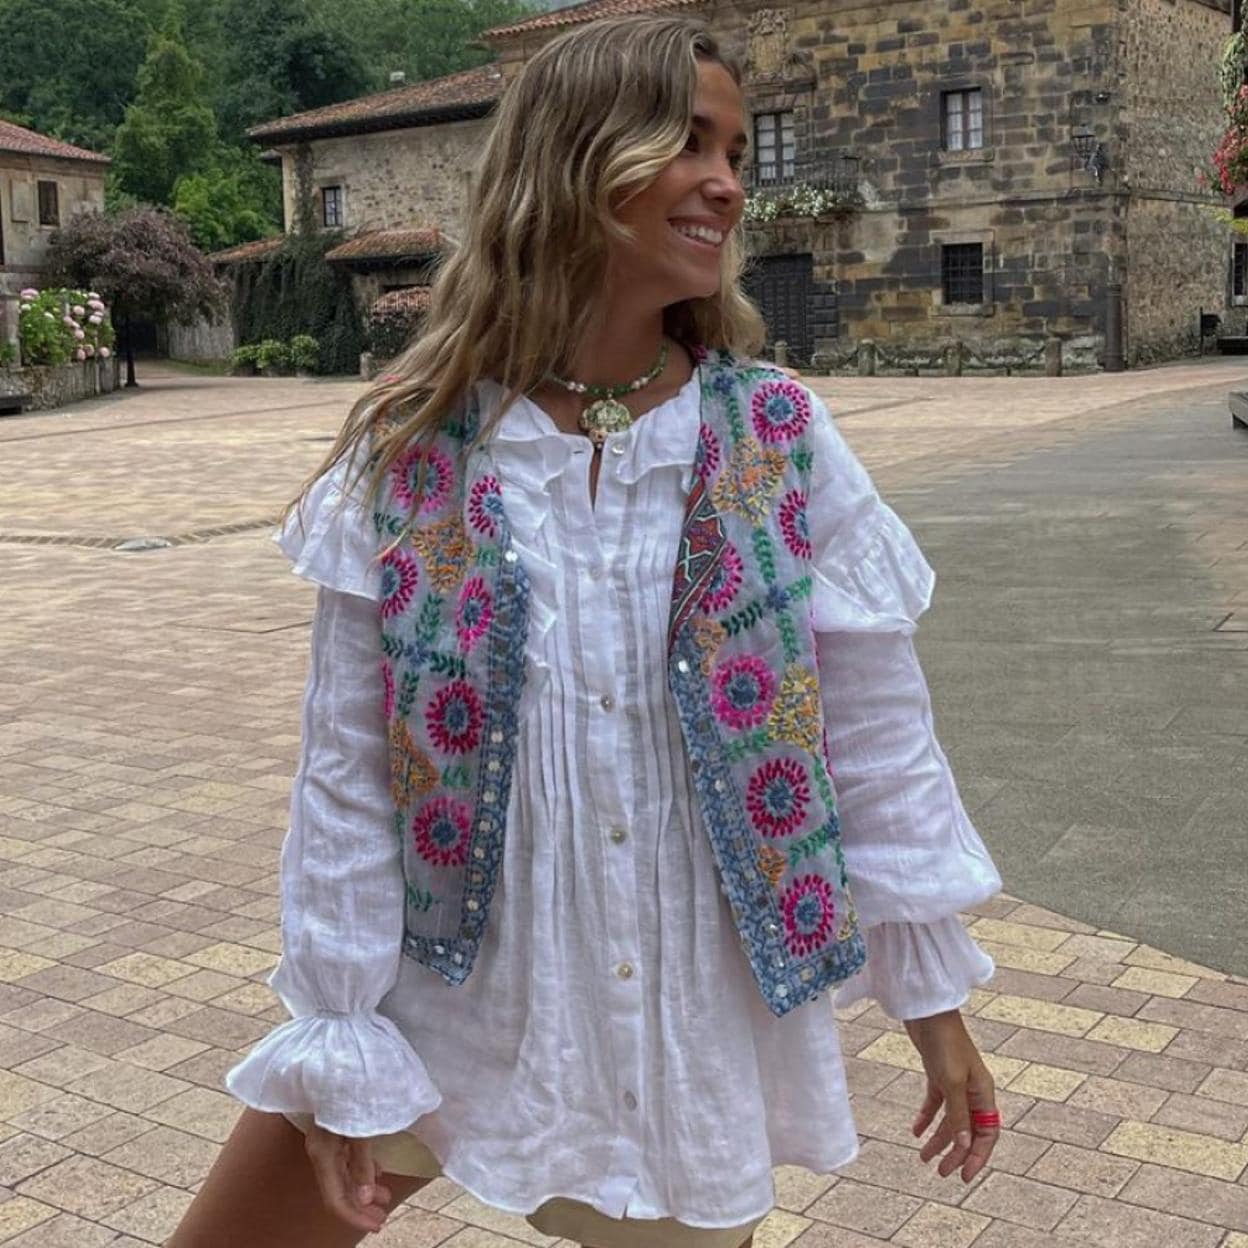 Agotada y sin lista de espera: dónde cómo la blusa blanca romántica de las de Zara que arrasa en Instagram | Mujer Hoy